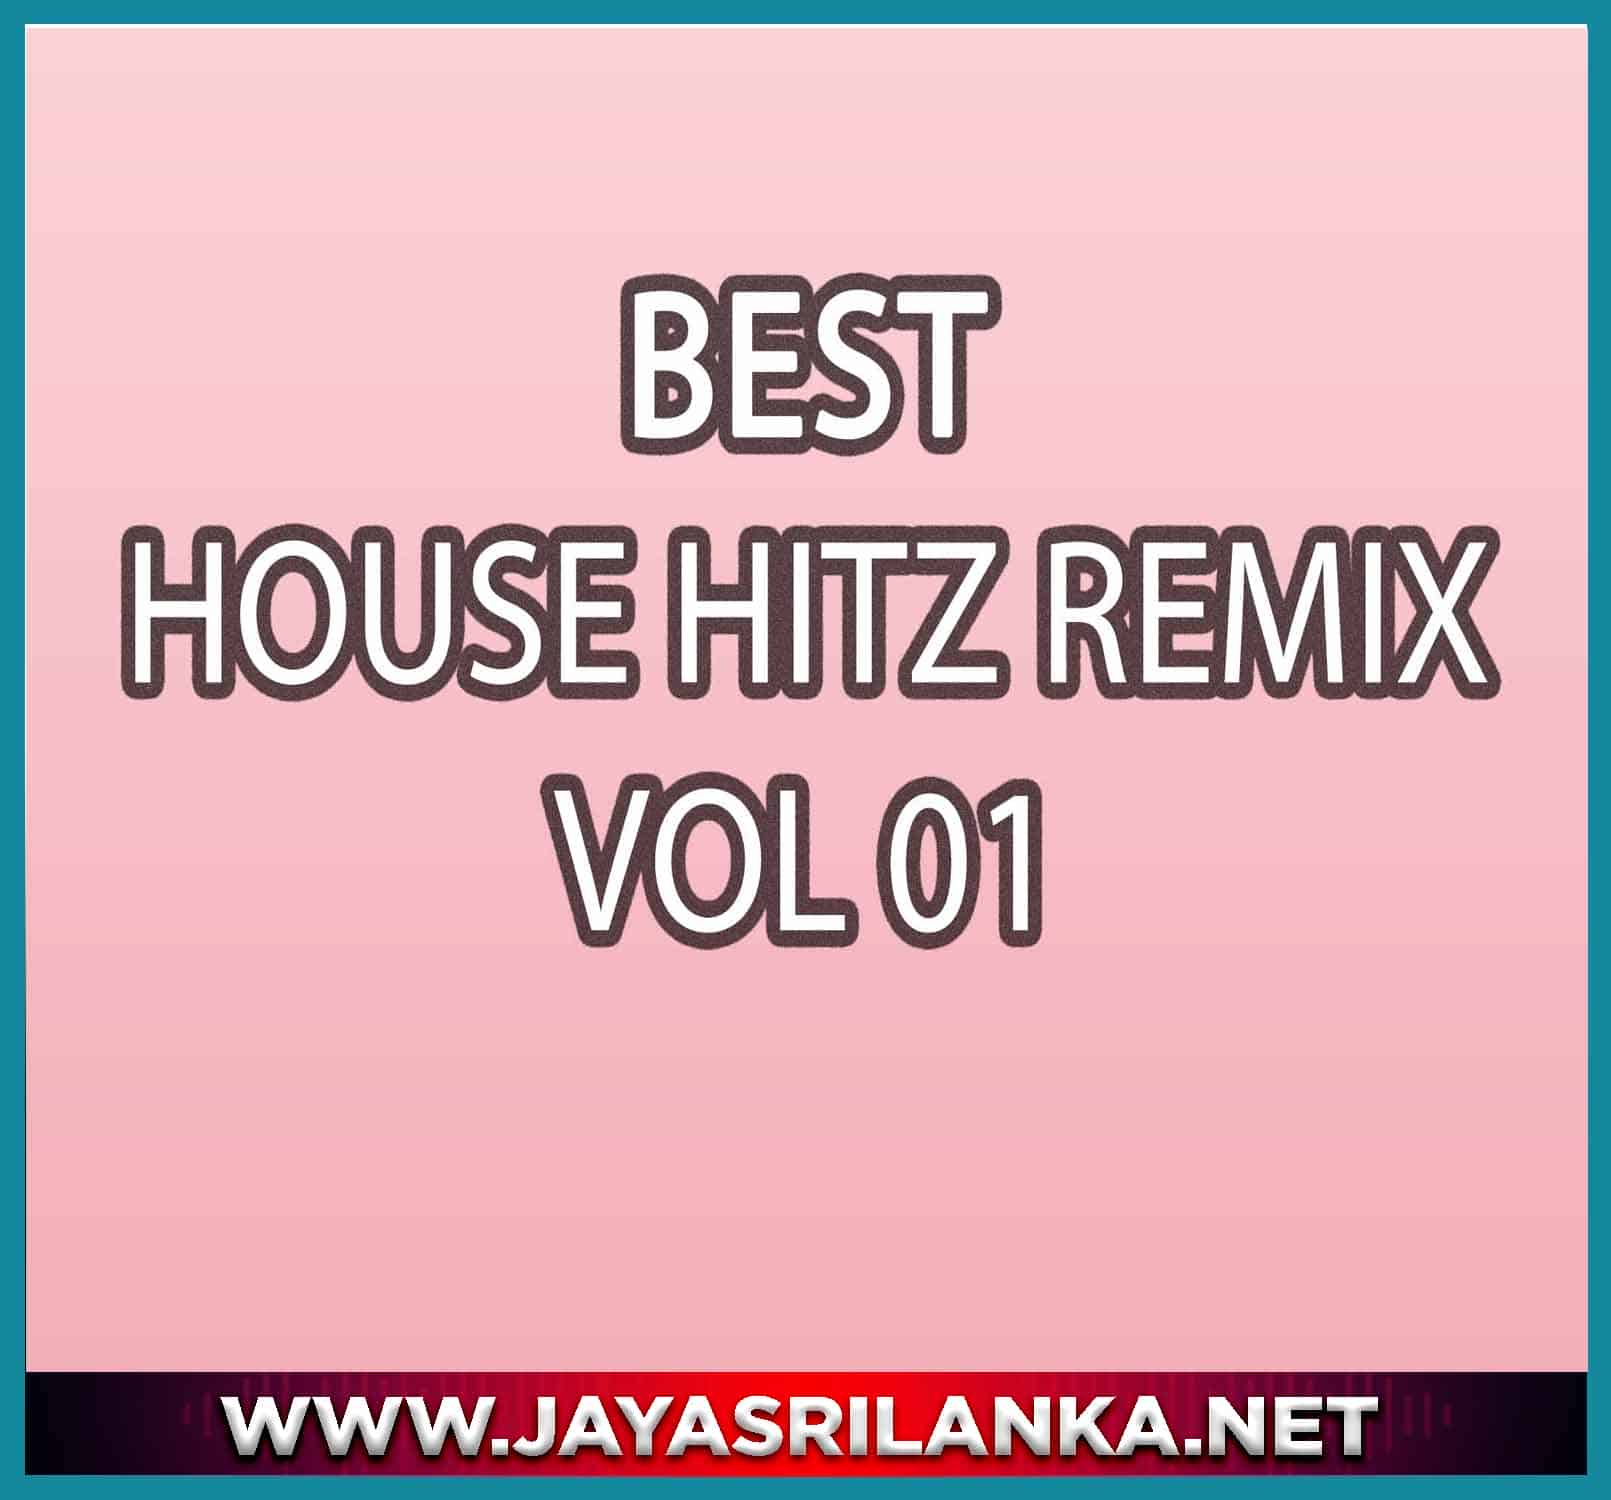 02 - Temptation Remix - Best House Hitz Vol 01 mp3 Image